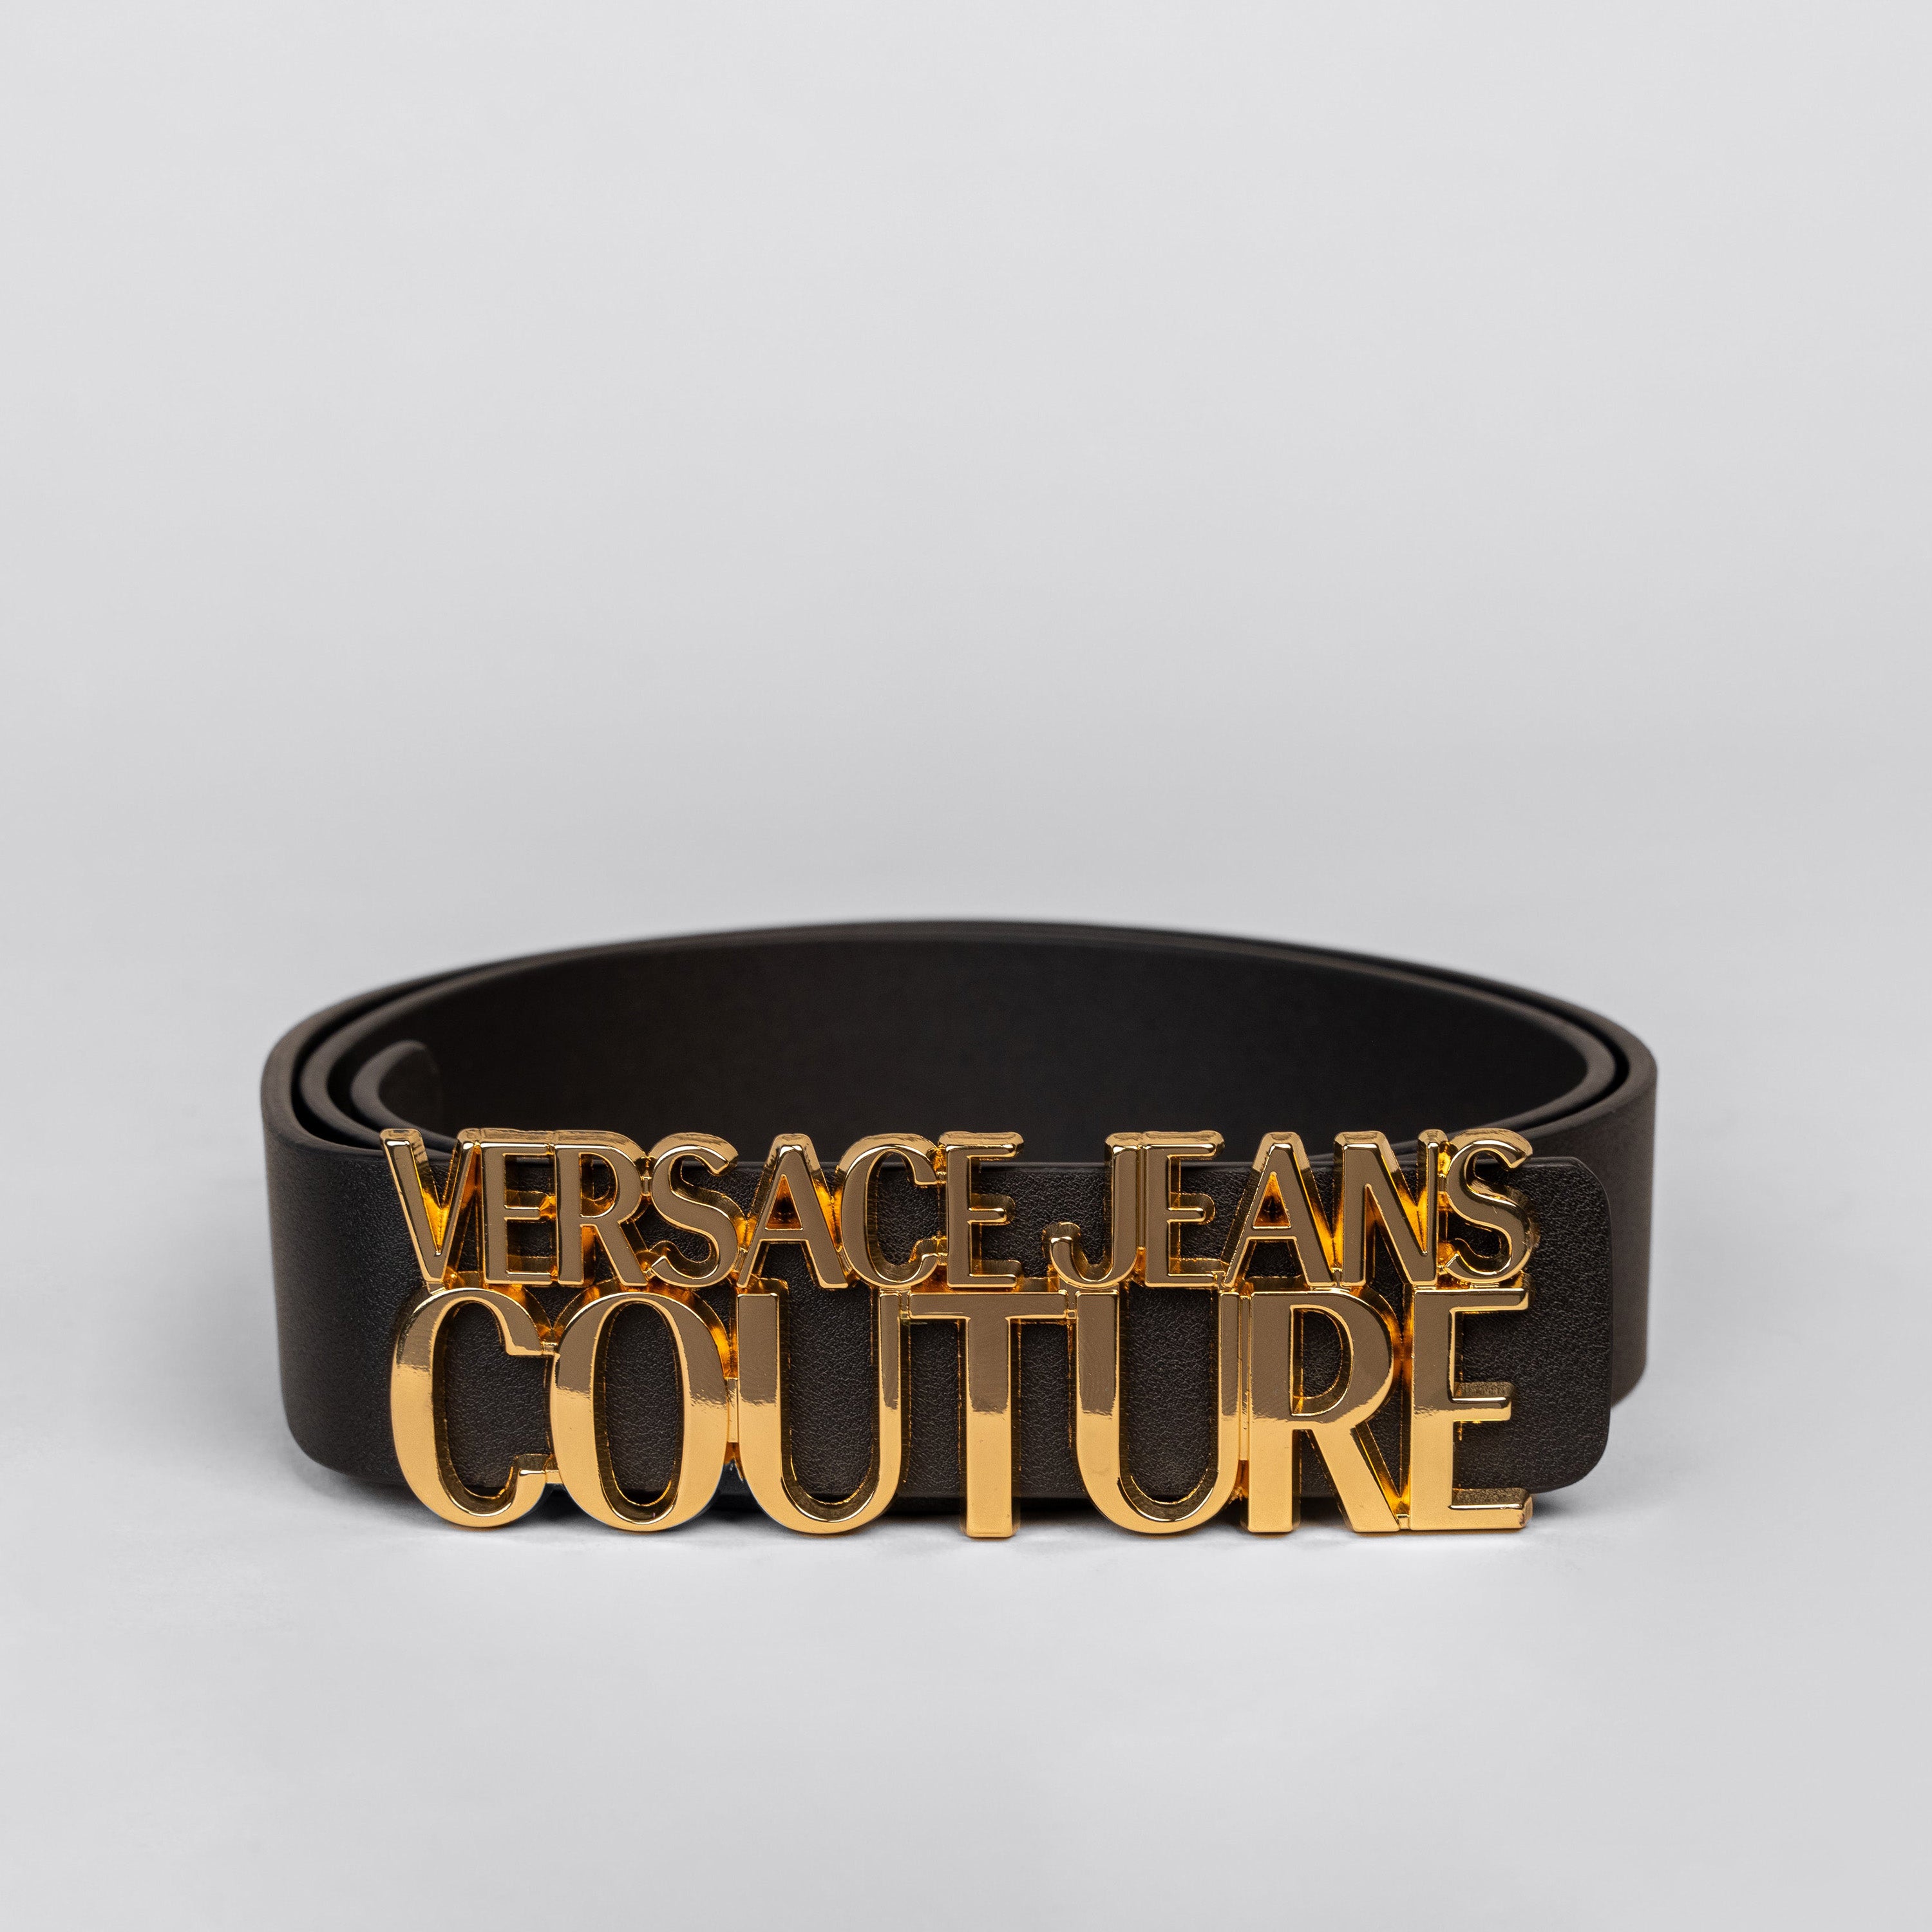 Cinturón Negro Versace Couture Dorado Plaque